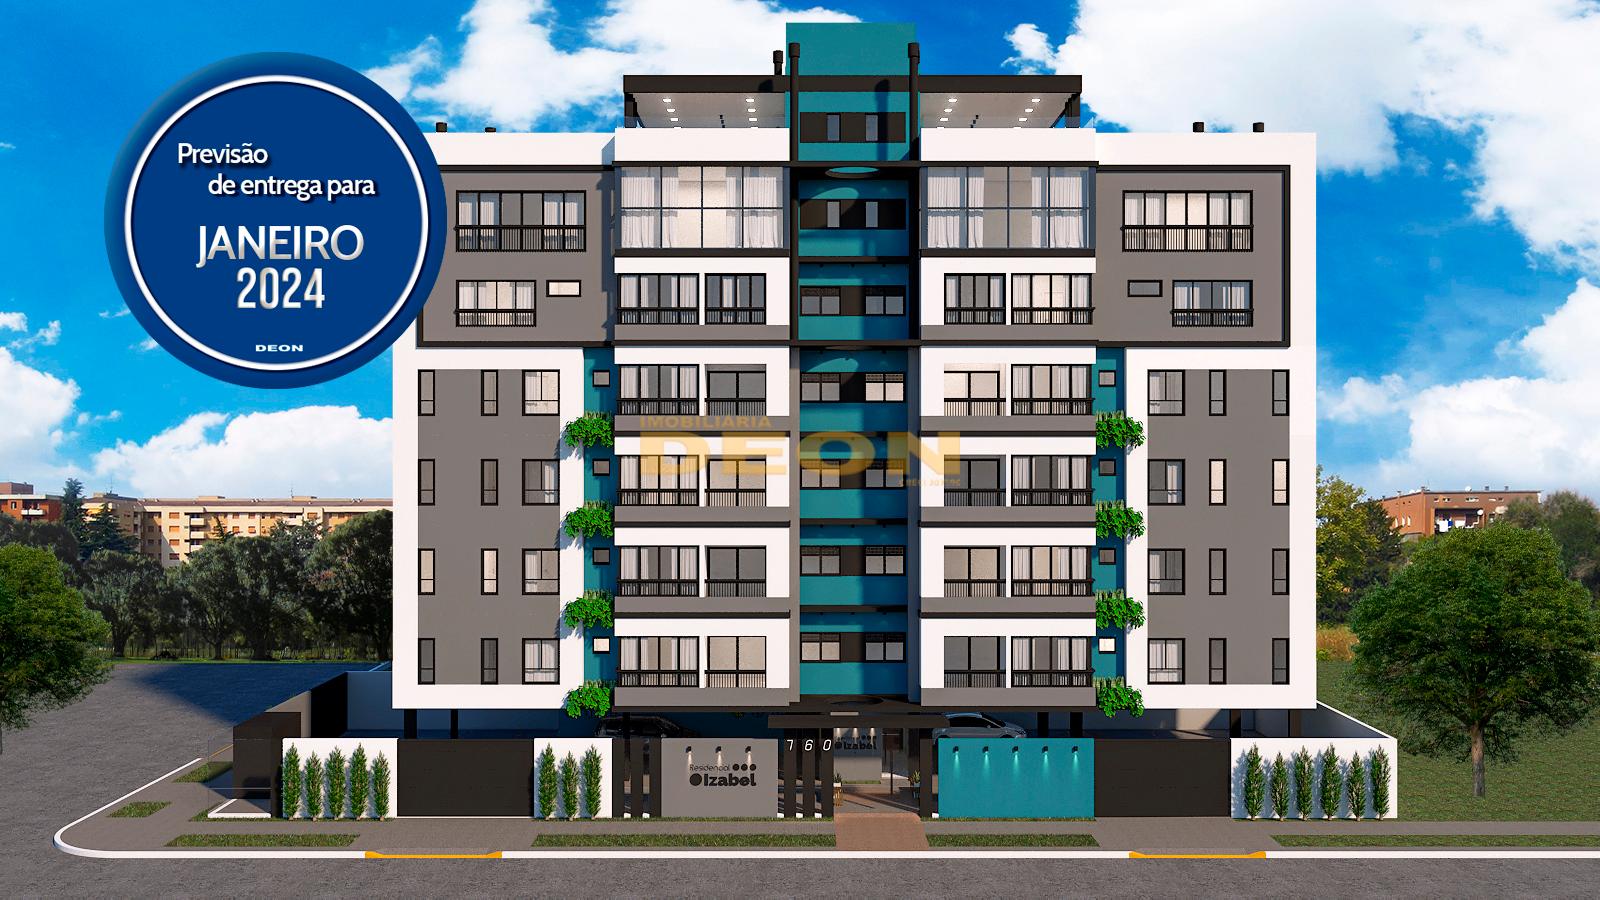 Apartamento com 3 dormitórios à venda,211.52 m², Alto Alegre, ...